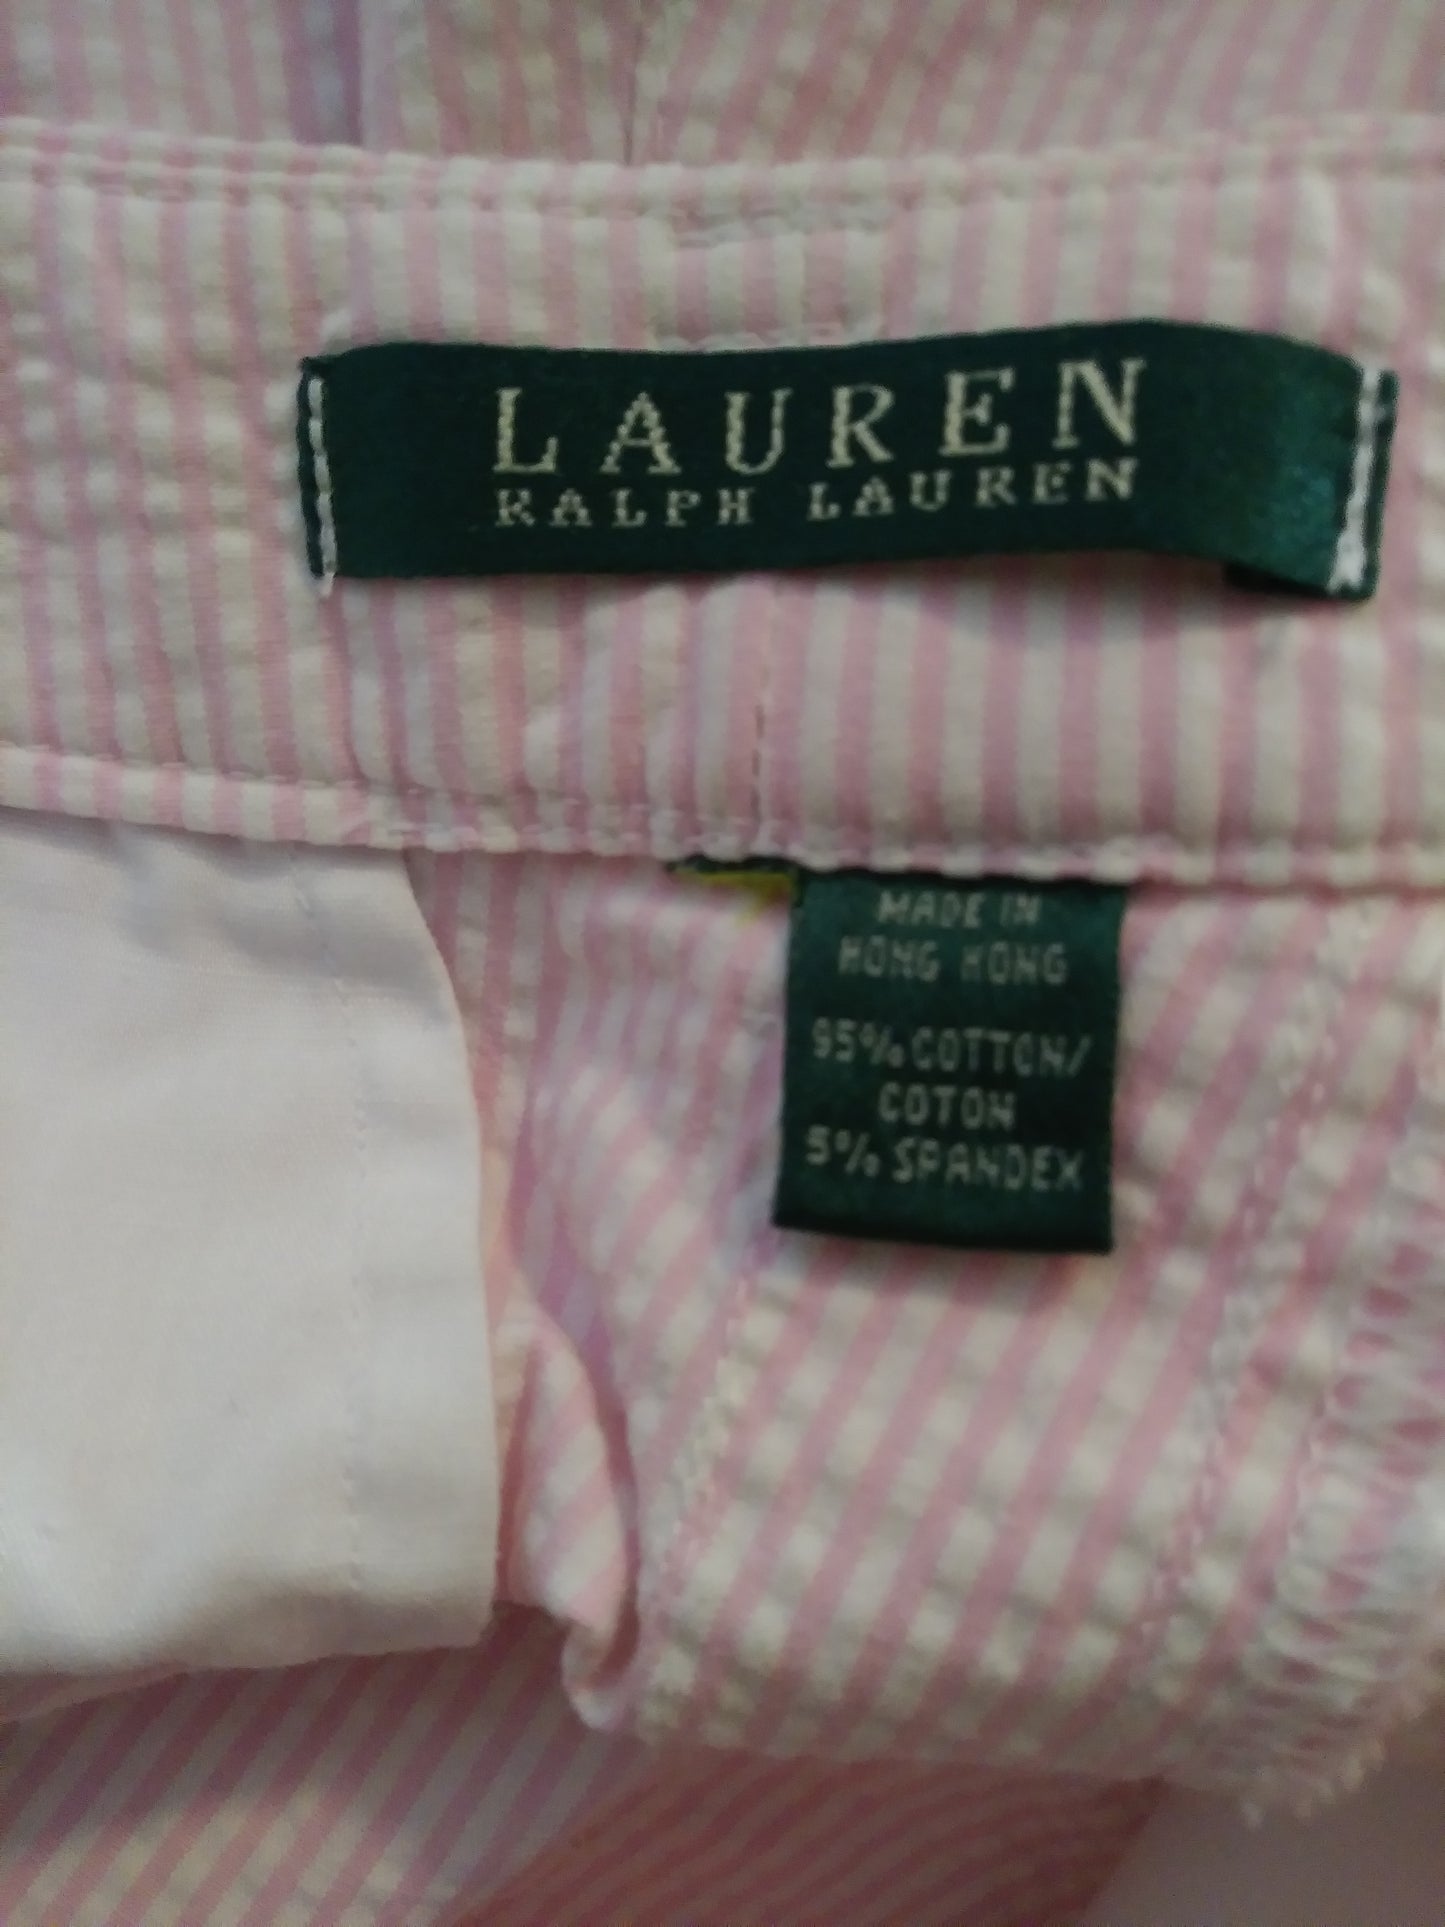 Ralph Lauren Pants Suit Pink/White (2-pc) Sz 10 (SKU 000084)